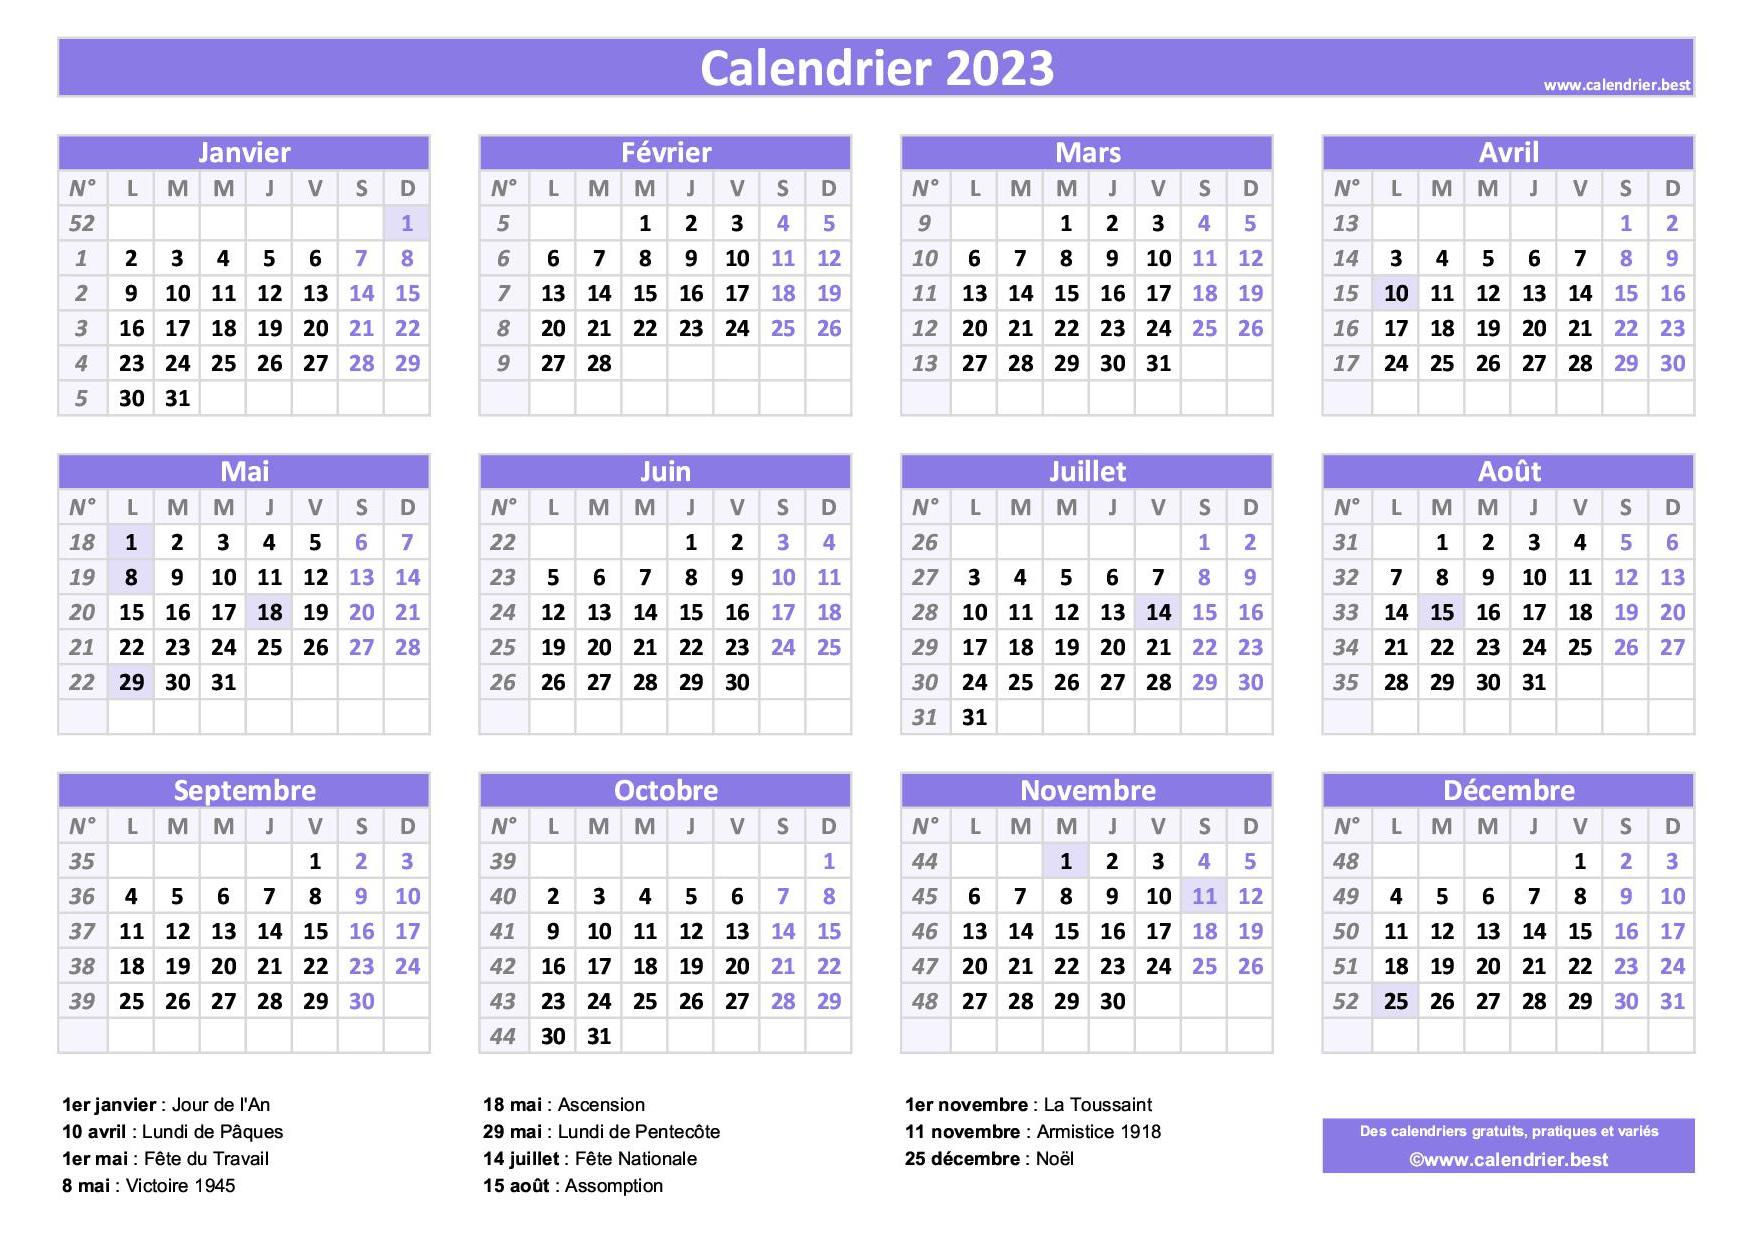 Календарь 2023 года беларусь